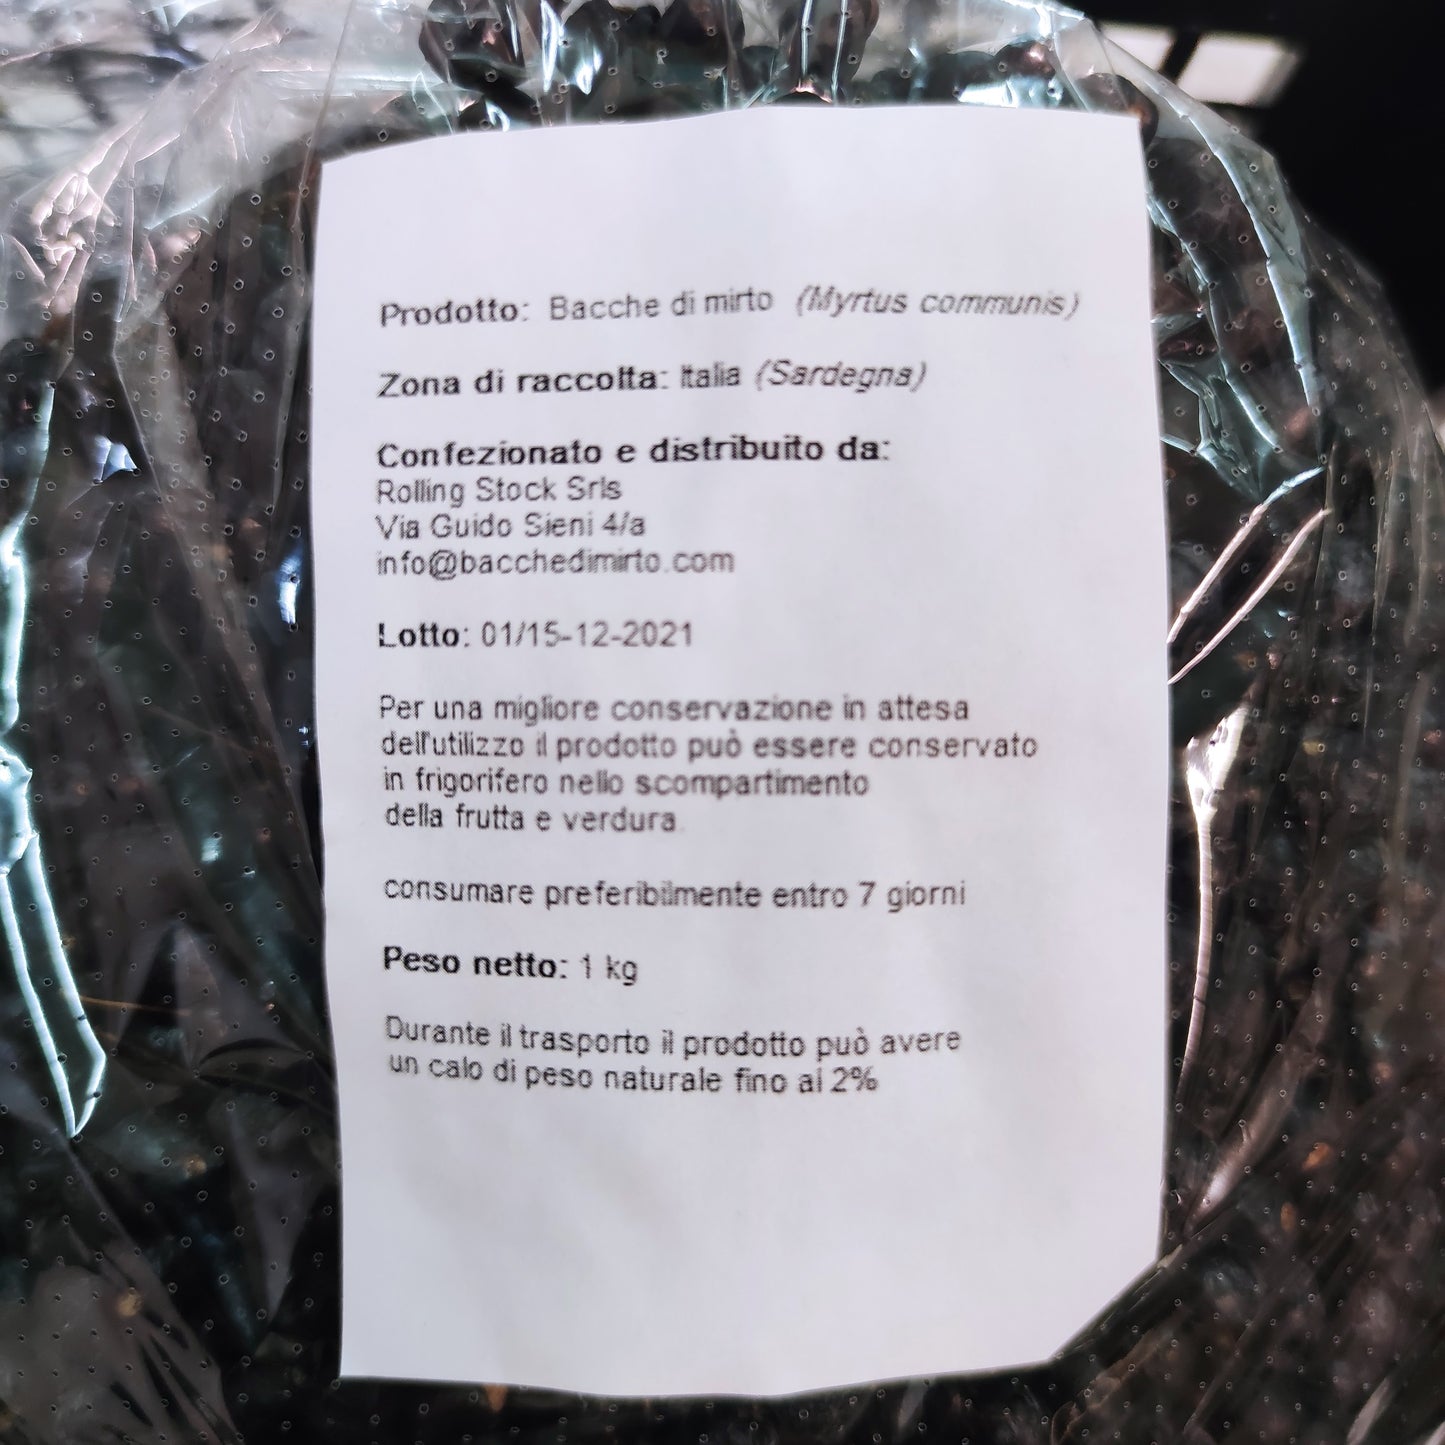 Baies fraîches de myrte noir sarde (myrtus communis) dans un emballage alimentaire [ PRÉCOMMANDE ]